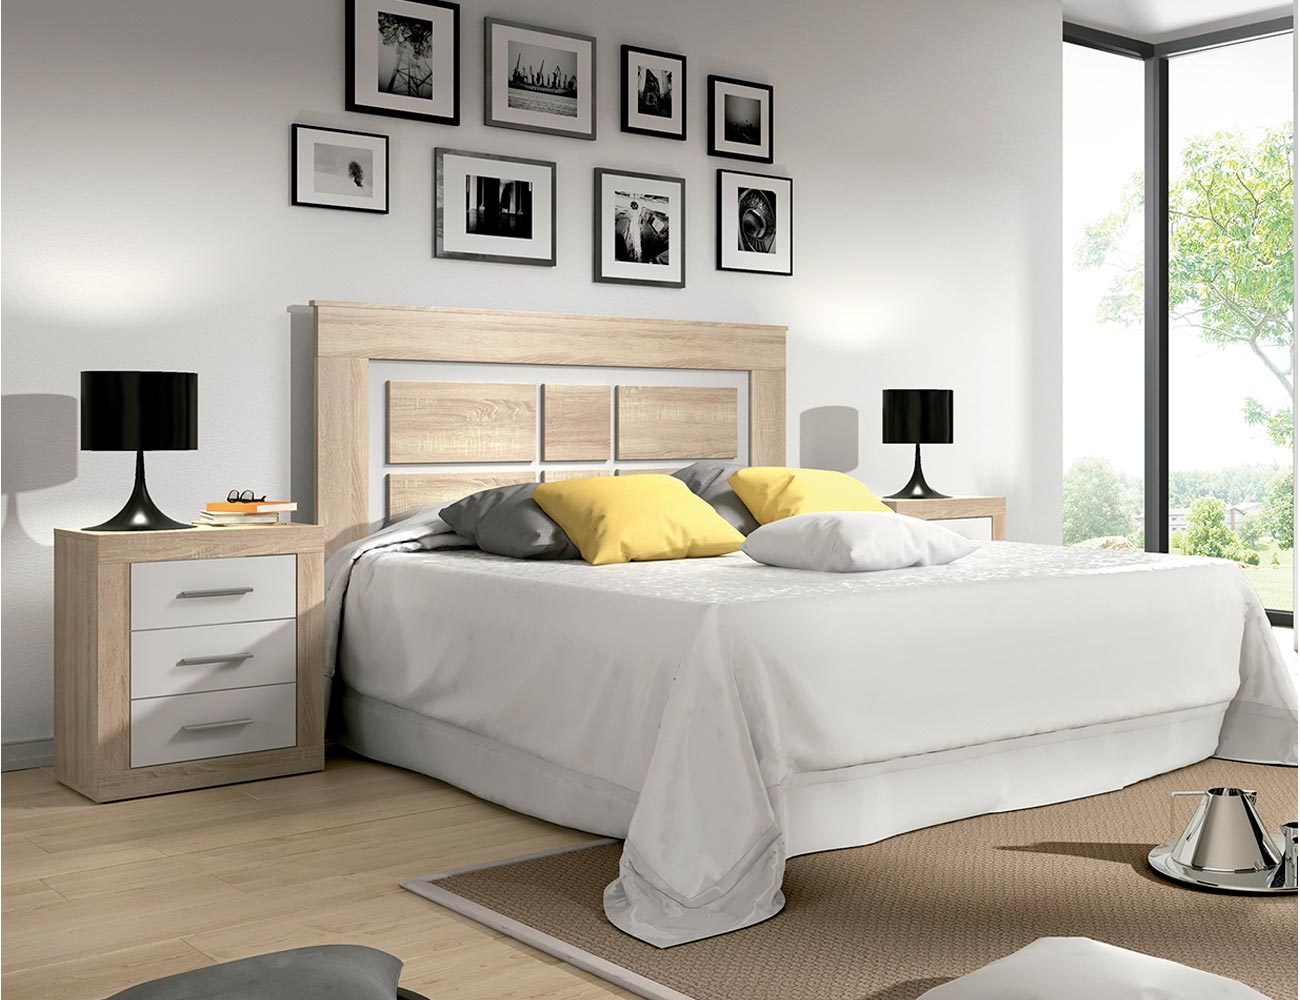 Muebles Dormitorio Matrimonio Completo Color Blanco y Cemento (Cama +  cabecero + cómoda + Armario) SOMIER Incluido : : Hogar y cocina